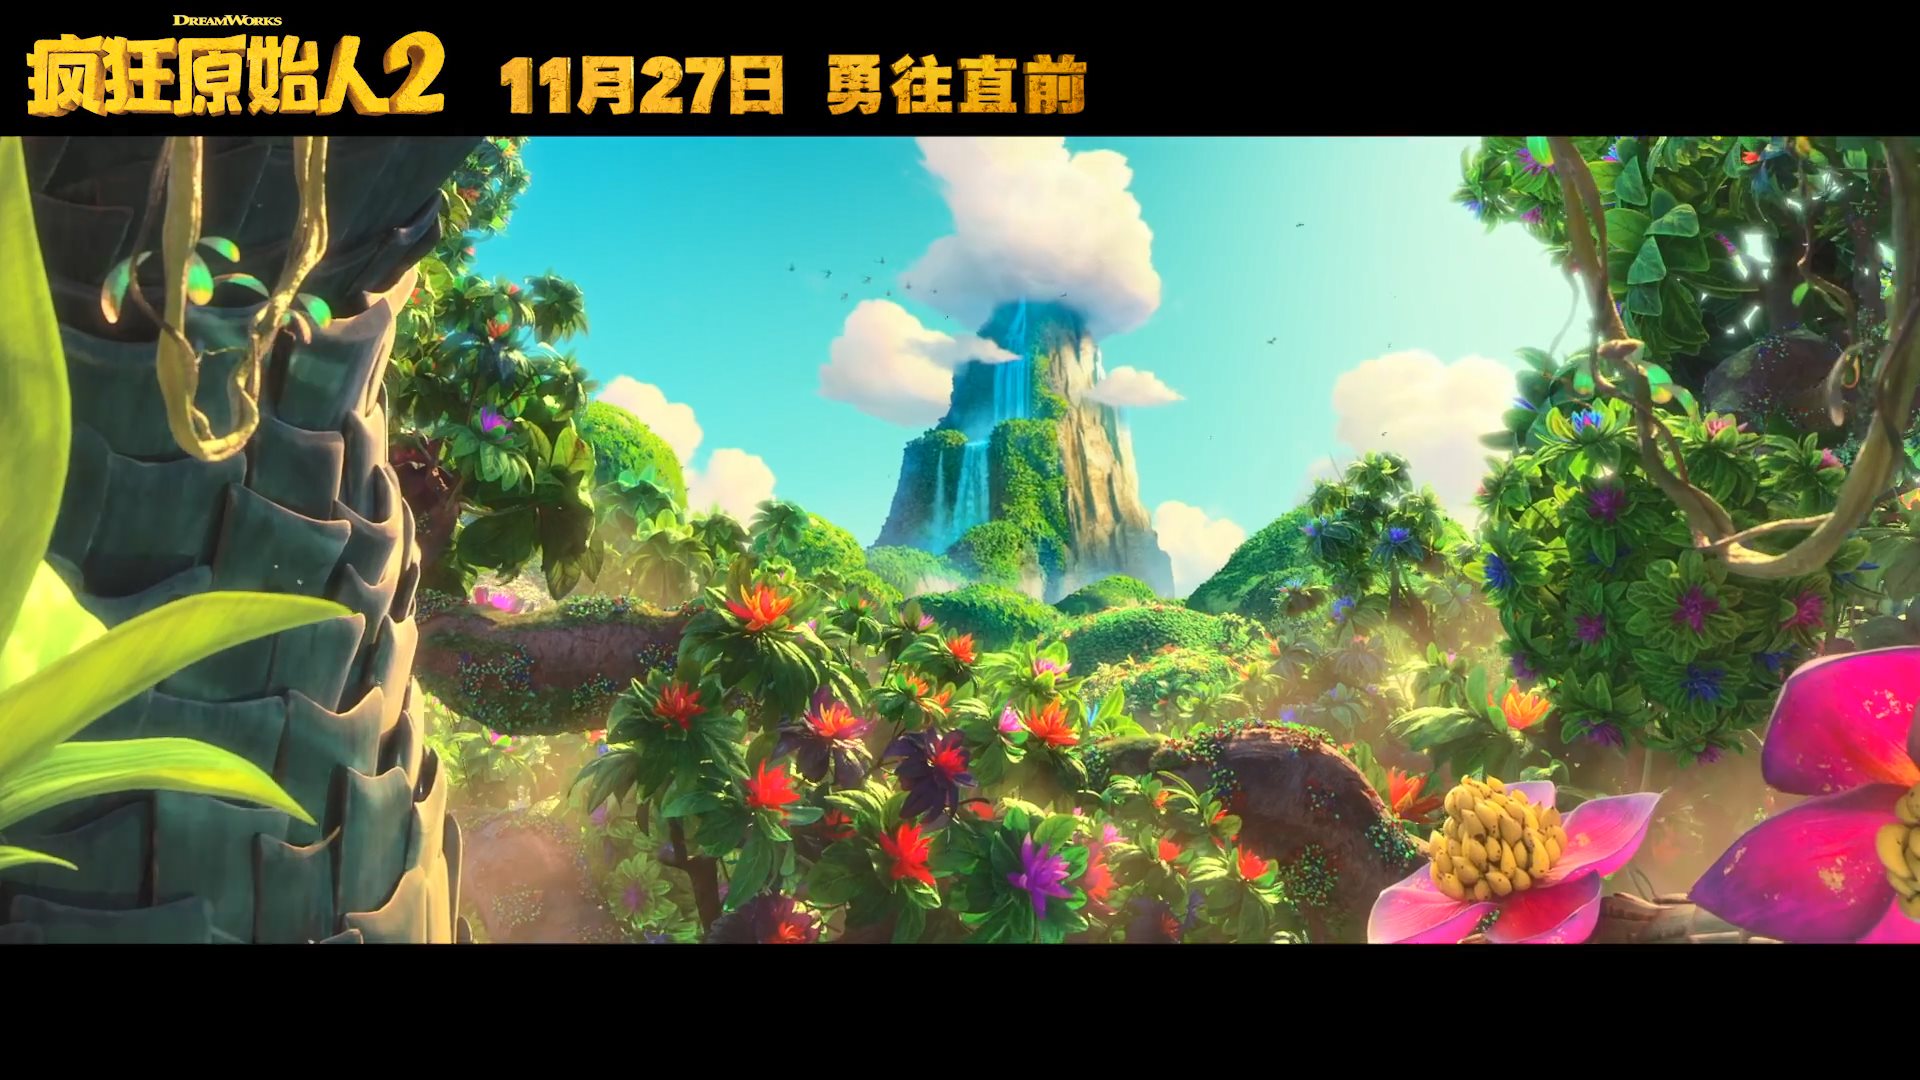 梦工厂动画《疯狂原始人2》国内定档 11月27日院线上映